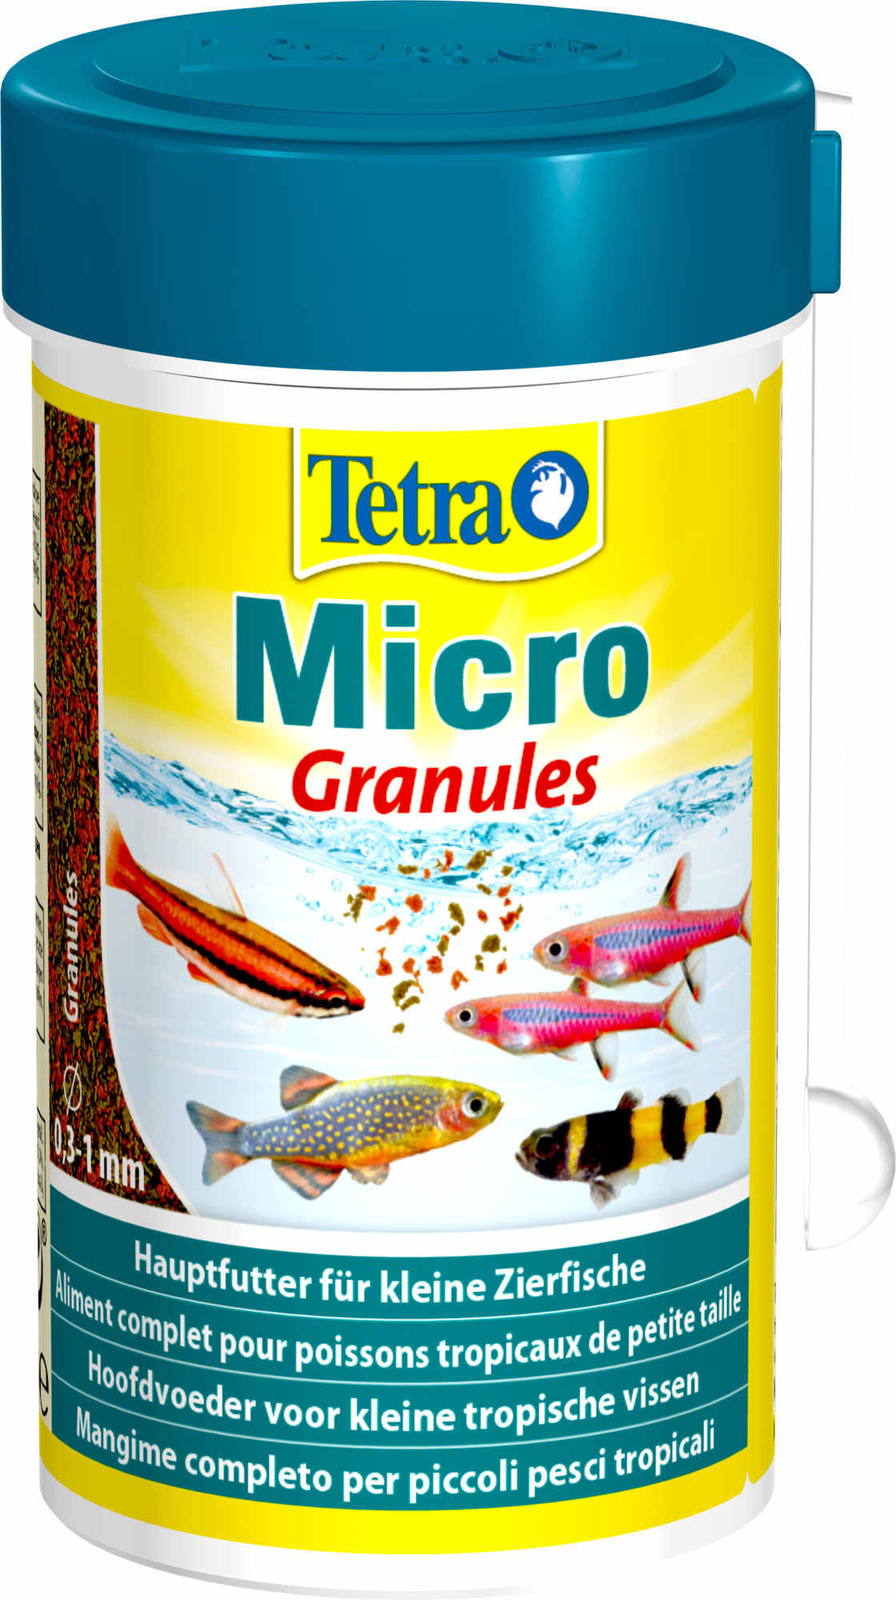 Tetra (корма) Tetra (корма) корм для всех видов мелких рыб, микрогранулы (45 г)